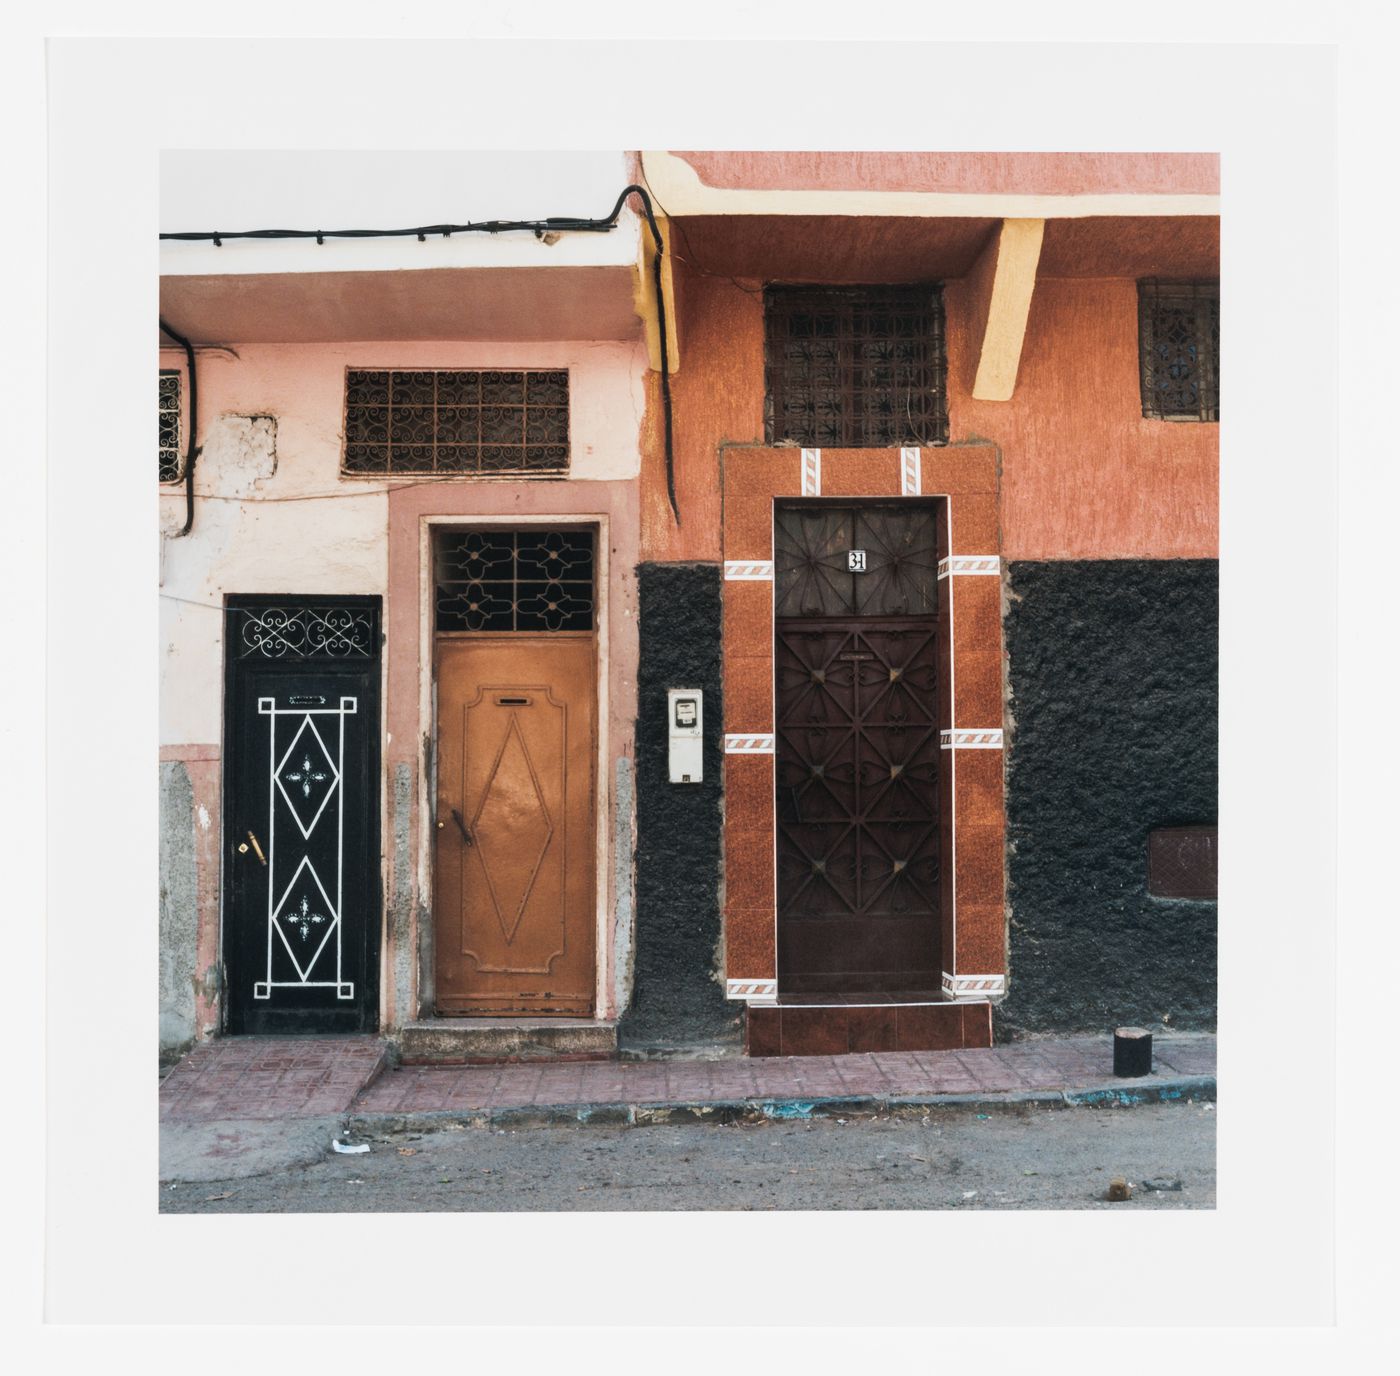 Decorated doors of buildings, cité horizontale, Carrières centrales neighbourhood, Casablanca